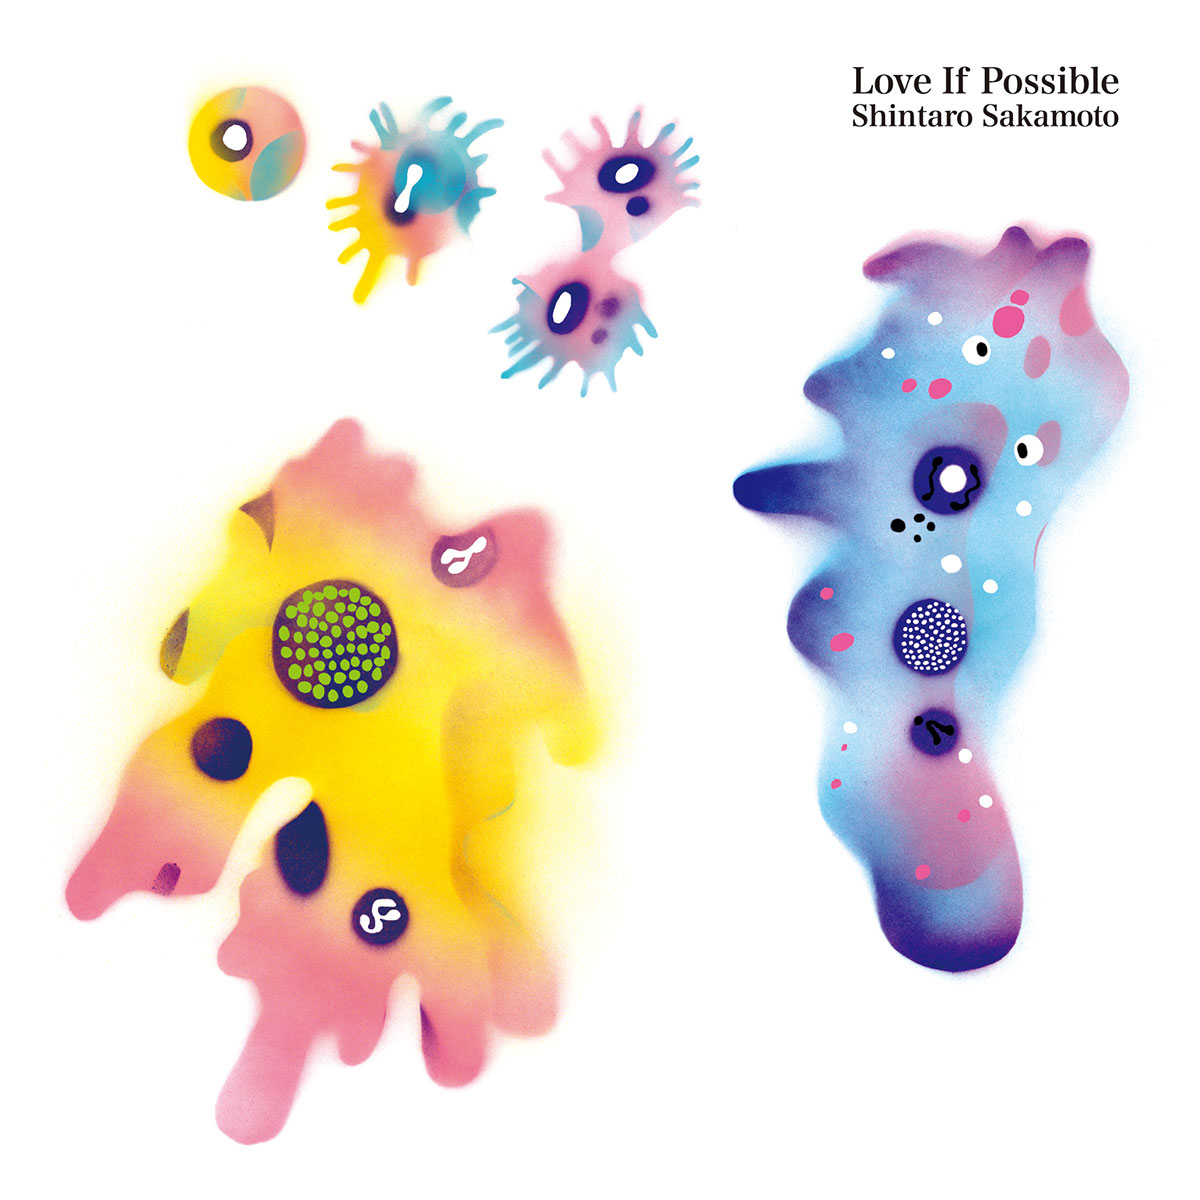 坂本慎太郎、3rdアルバム タイトルは『できれば愛を（Love If Possible）』に決定！ music160609_sakamoto_4